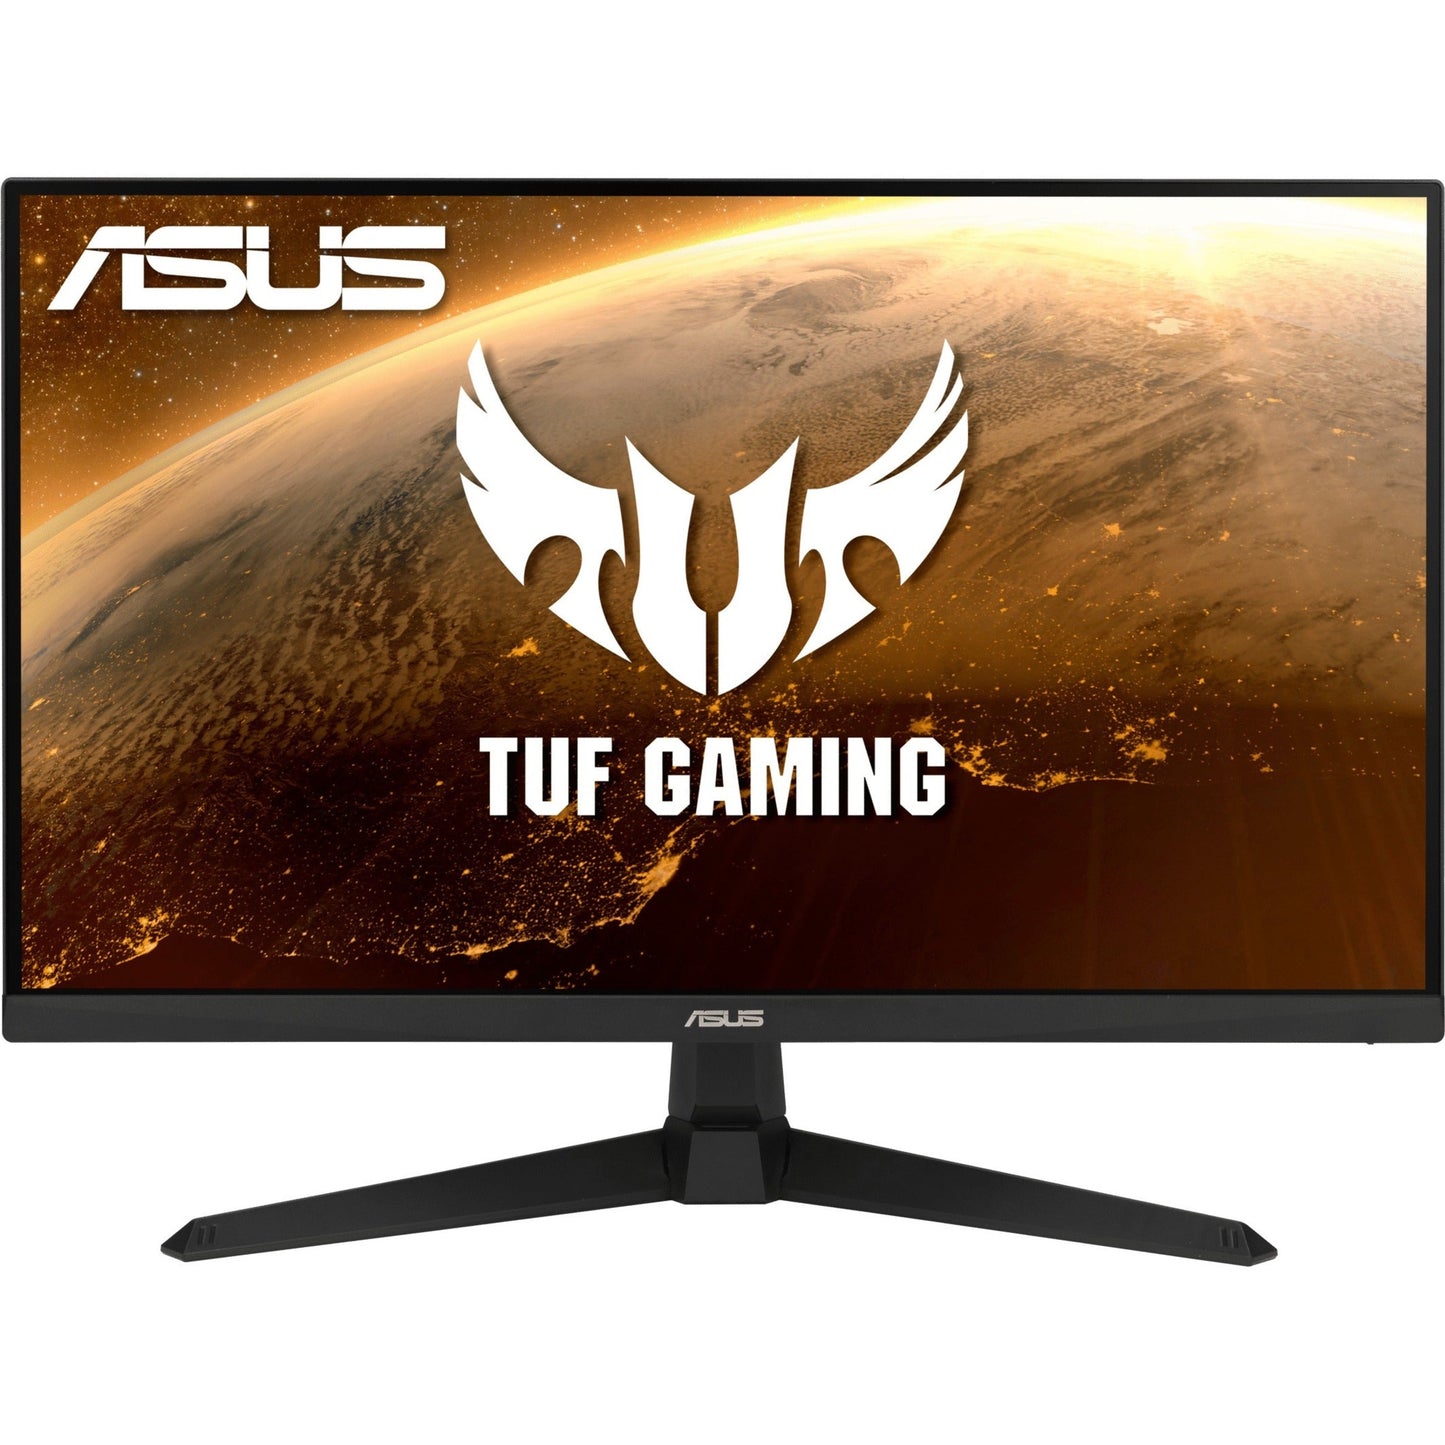 TUF VG277Q1A 27" Full HD Gaming LCD Monitor - 16:9 - Black